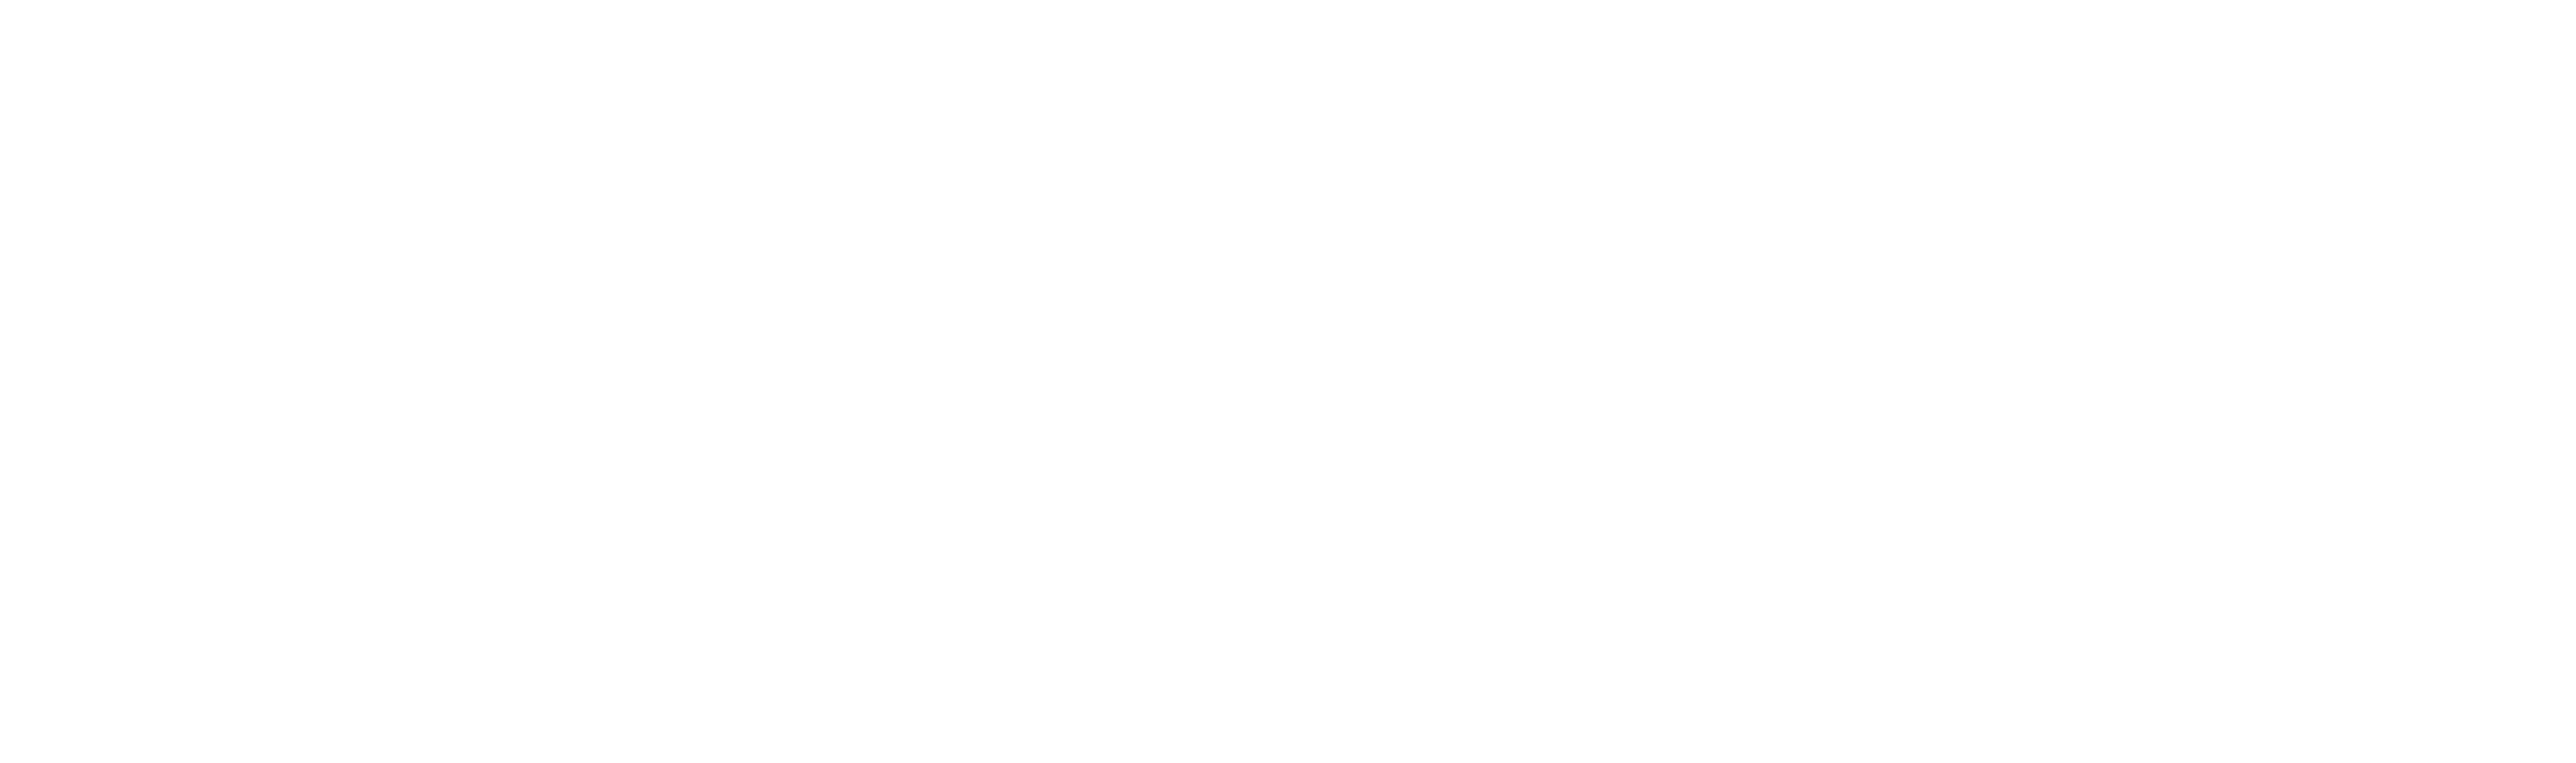 Rhenium Investment GmbH